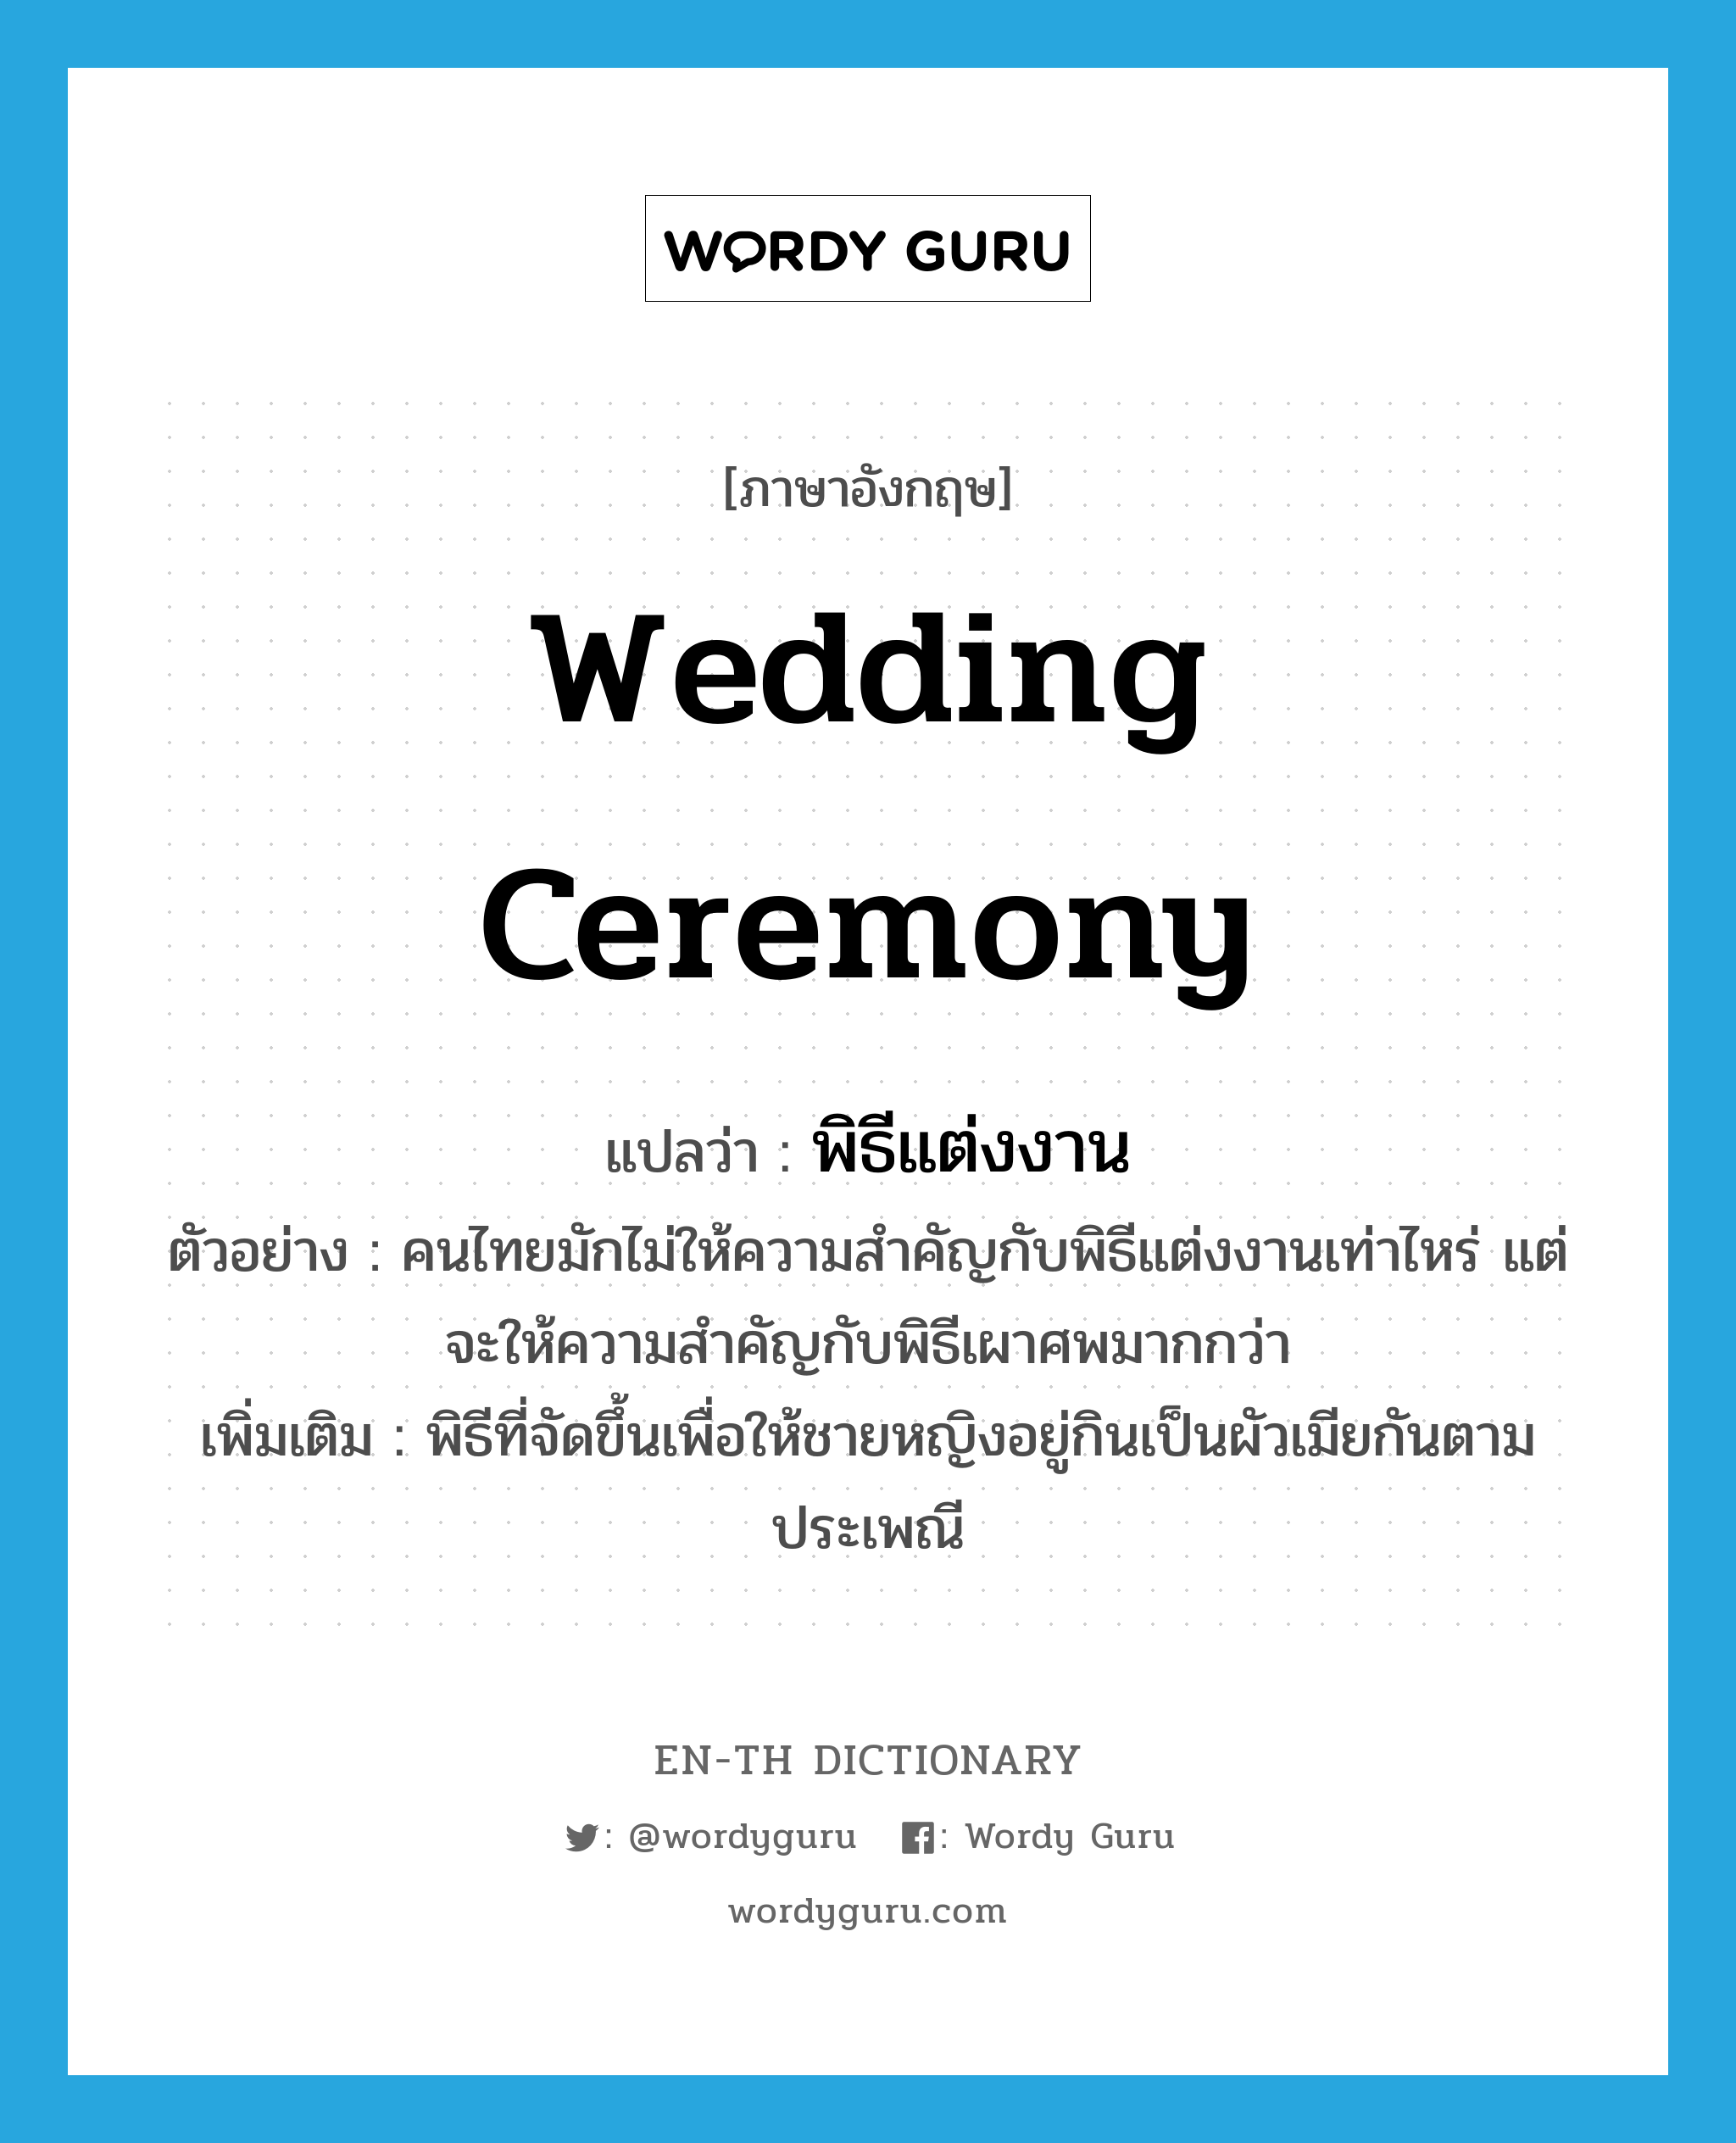 wedding ceremony แปลว่า?, คำศัพท์ภาษาอังกฤษ wedding ceremony แปลว่า พิธีแต่งงาน ประเภท N ตัวอย่าง คนไทยมักไม่ให้ความสำคัญกับพิธีแต่งงานเท่าไหร่ แต่จะให้ความสำคัญกับพิธีเผาศพมากกว่า เพิ่มเติม พิธีที่จัดขึ้นเพื่อให้ชายหญิงอยู่กินเป็นผัวเมียกันตามประเพณี หมวด N